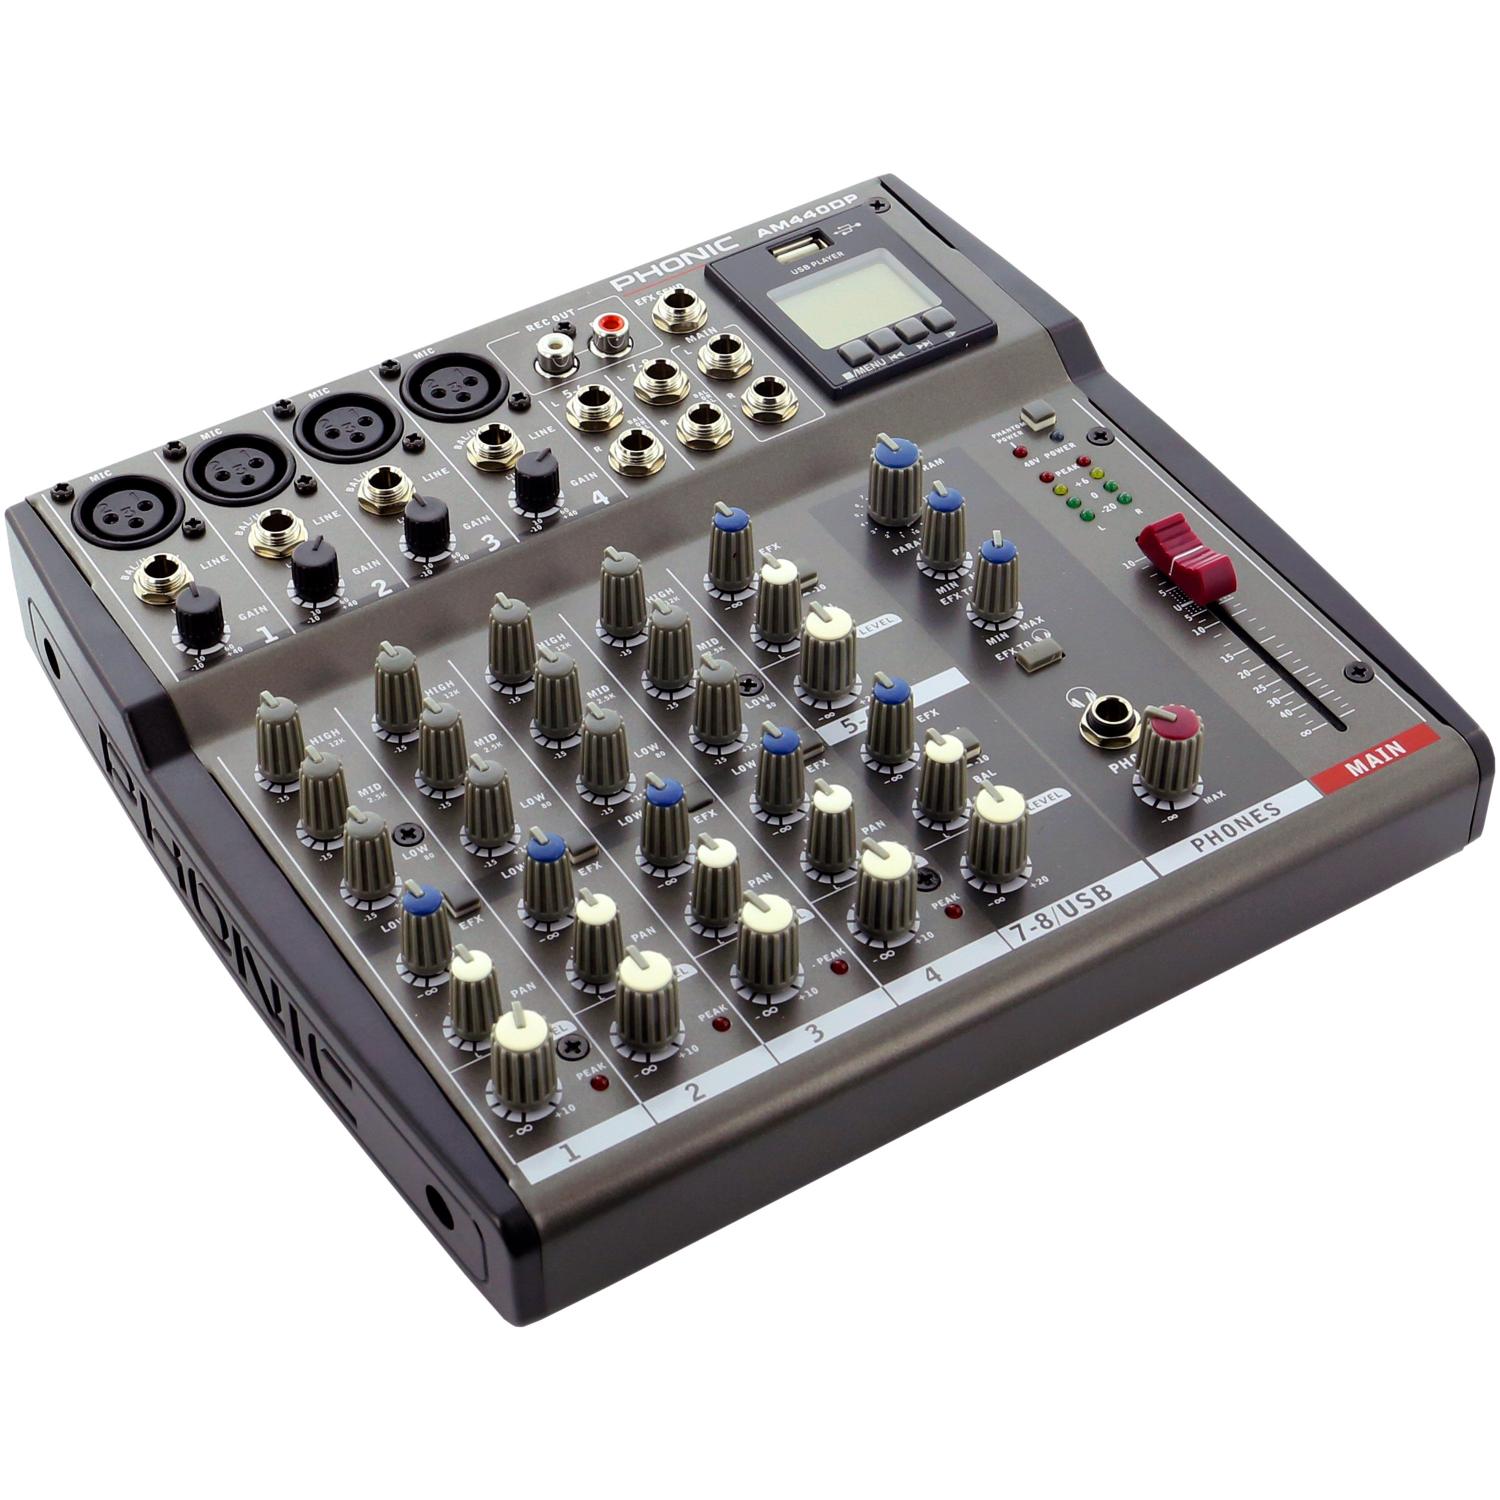 Console de mixage audio haute qualité avec mixage à effet